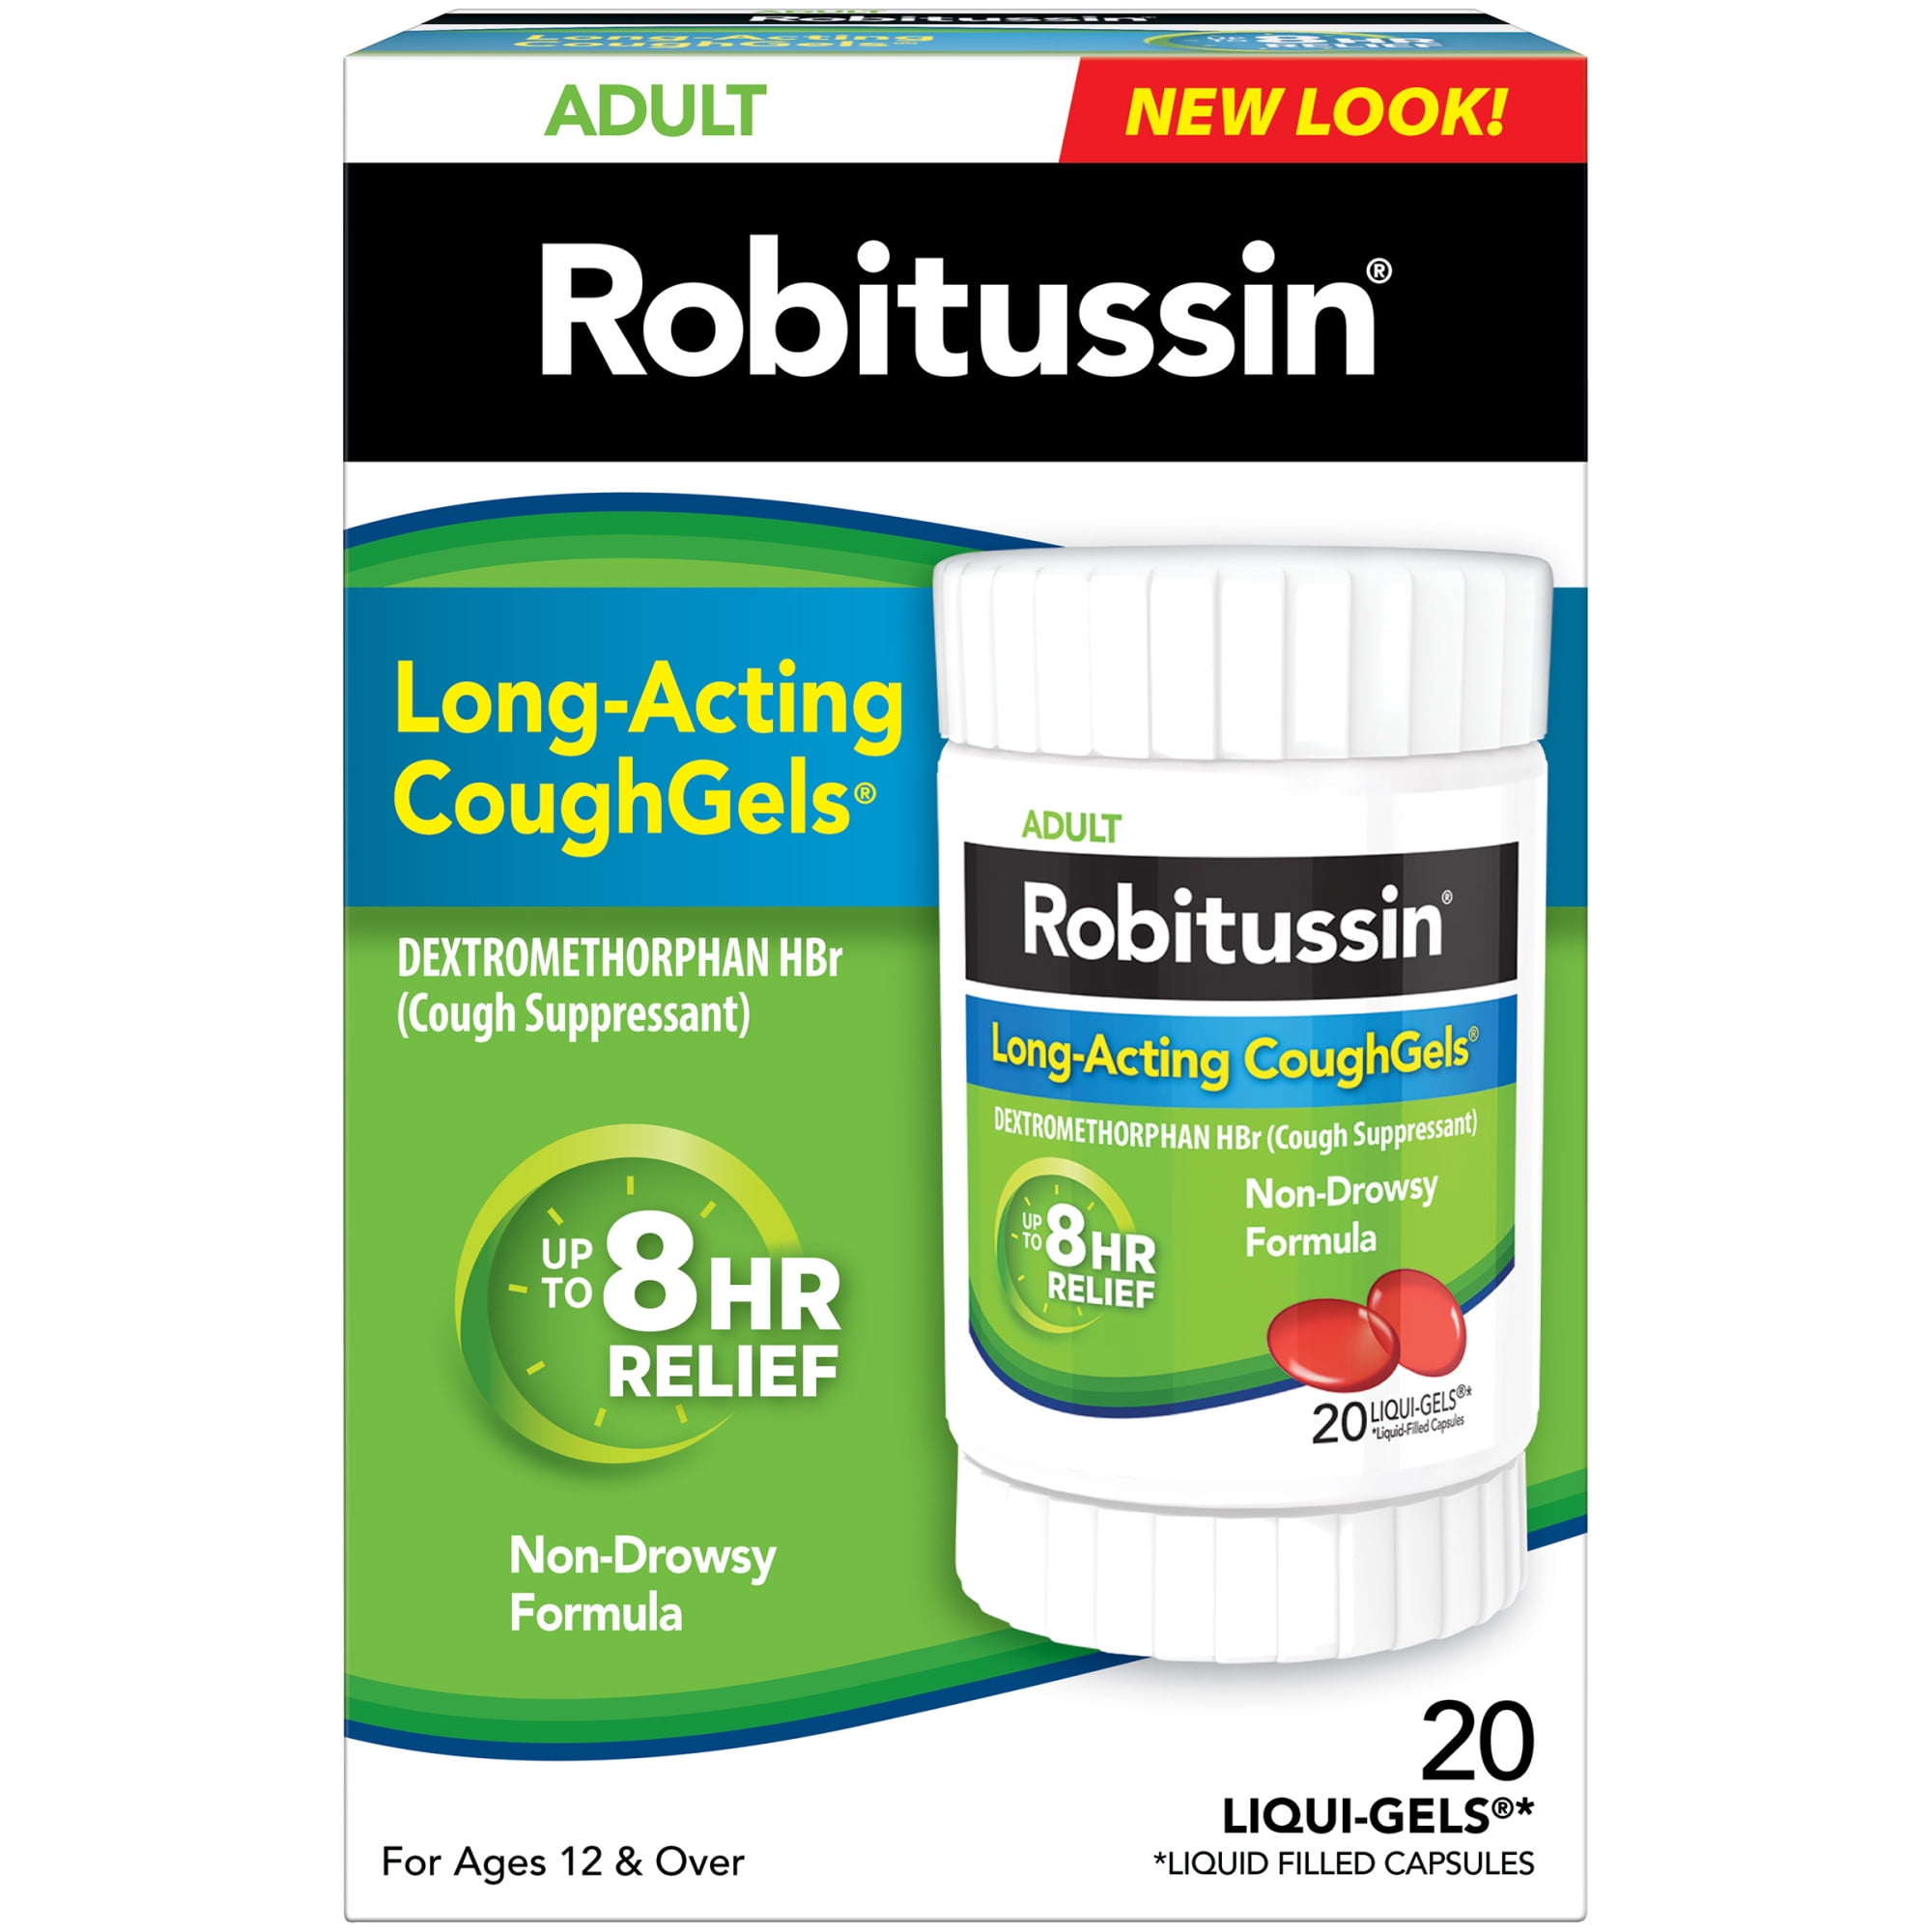 Robitussin Long-Acting Coughgels Adult Cough Liqui-Gels Capsules, 20 Count